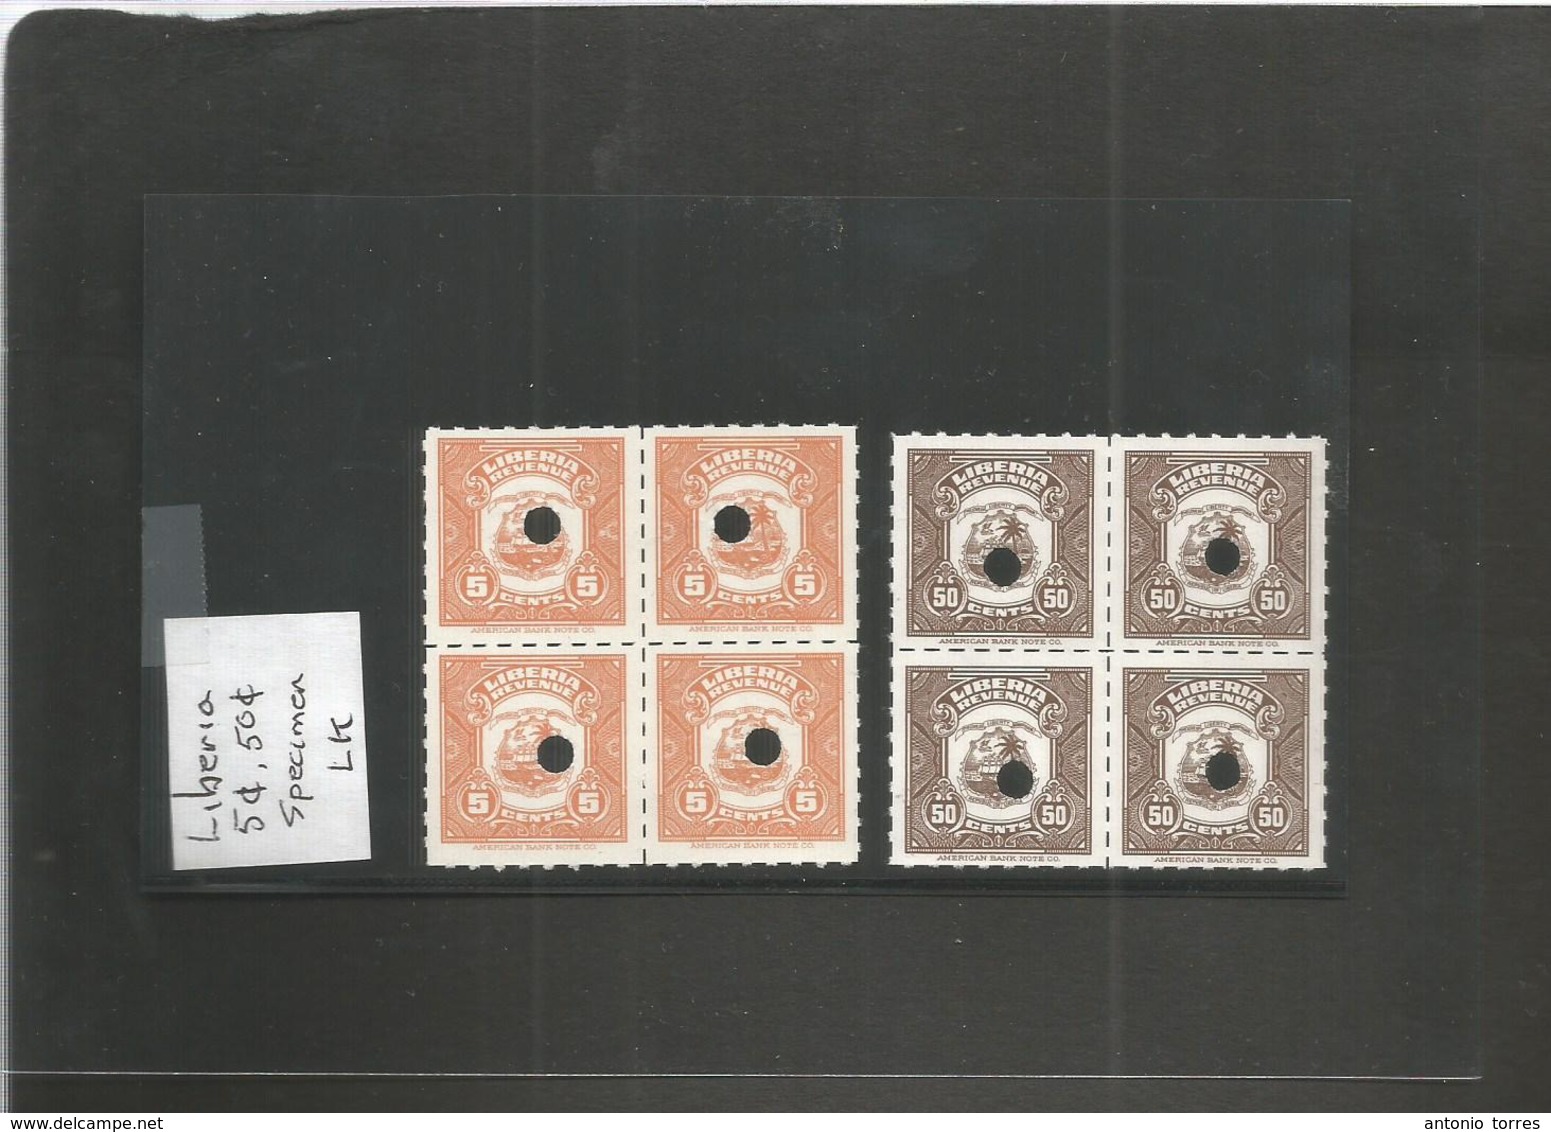 LIBERIA. C. 1960s Revenue Specimen 2 Block Of Four Incl 5c + 50c. Fine. - Liberia